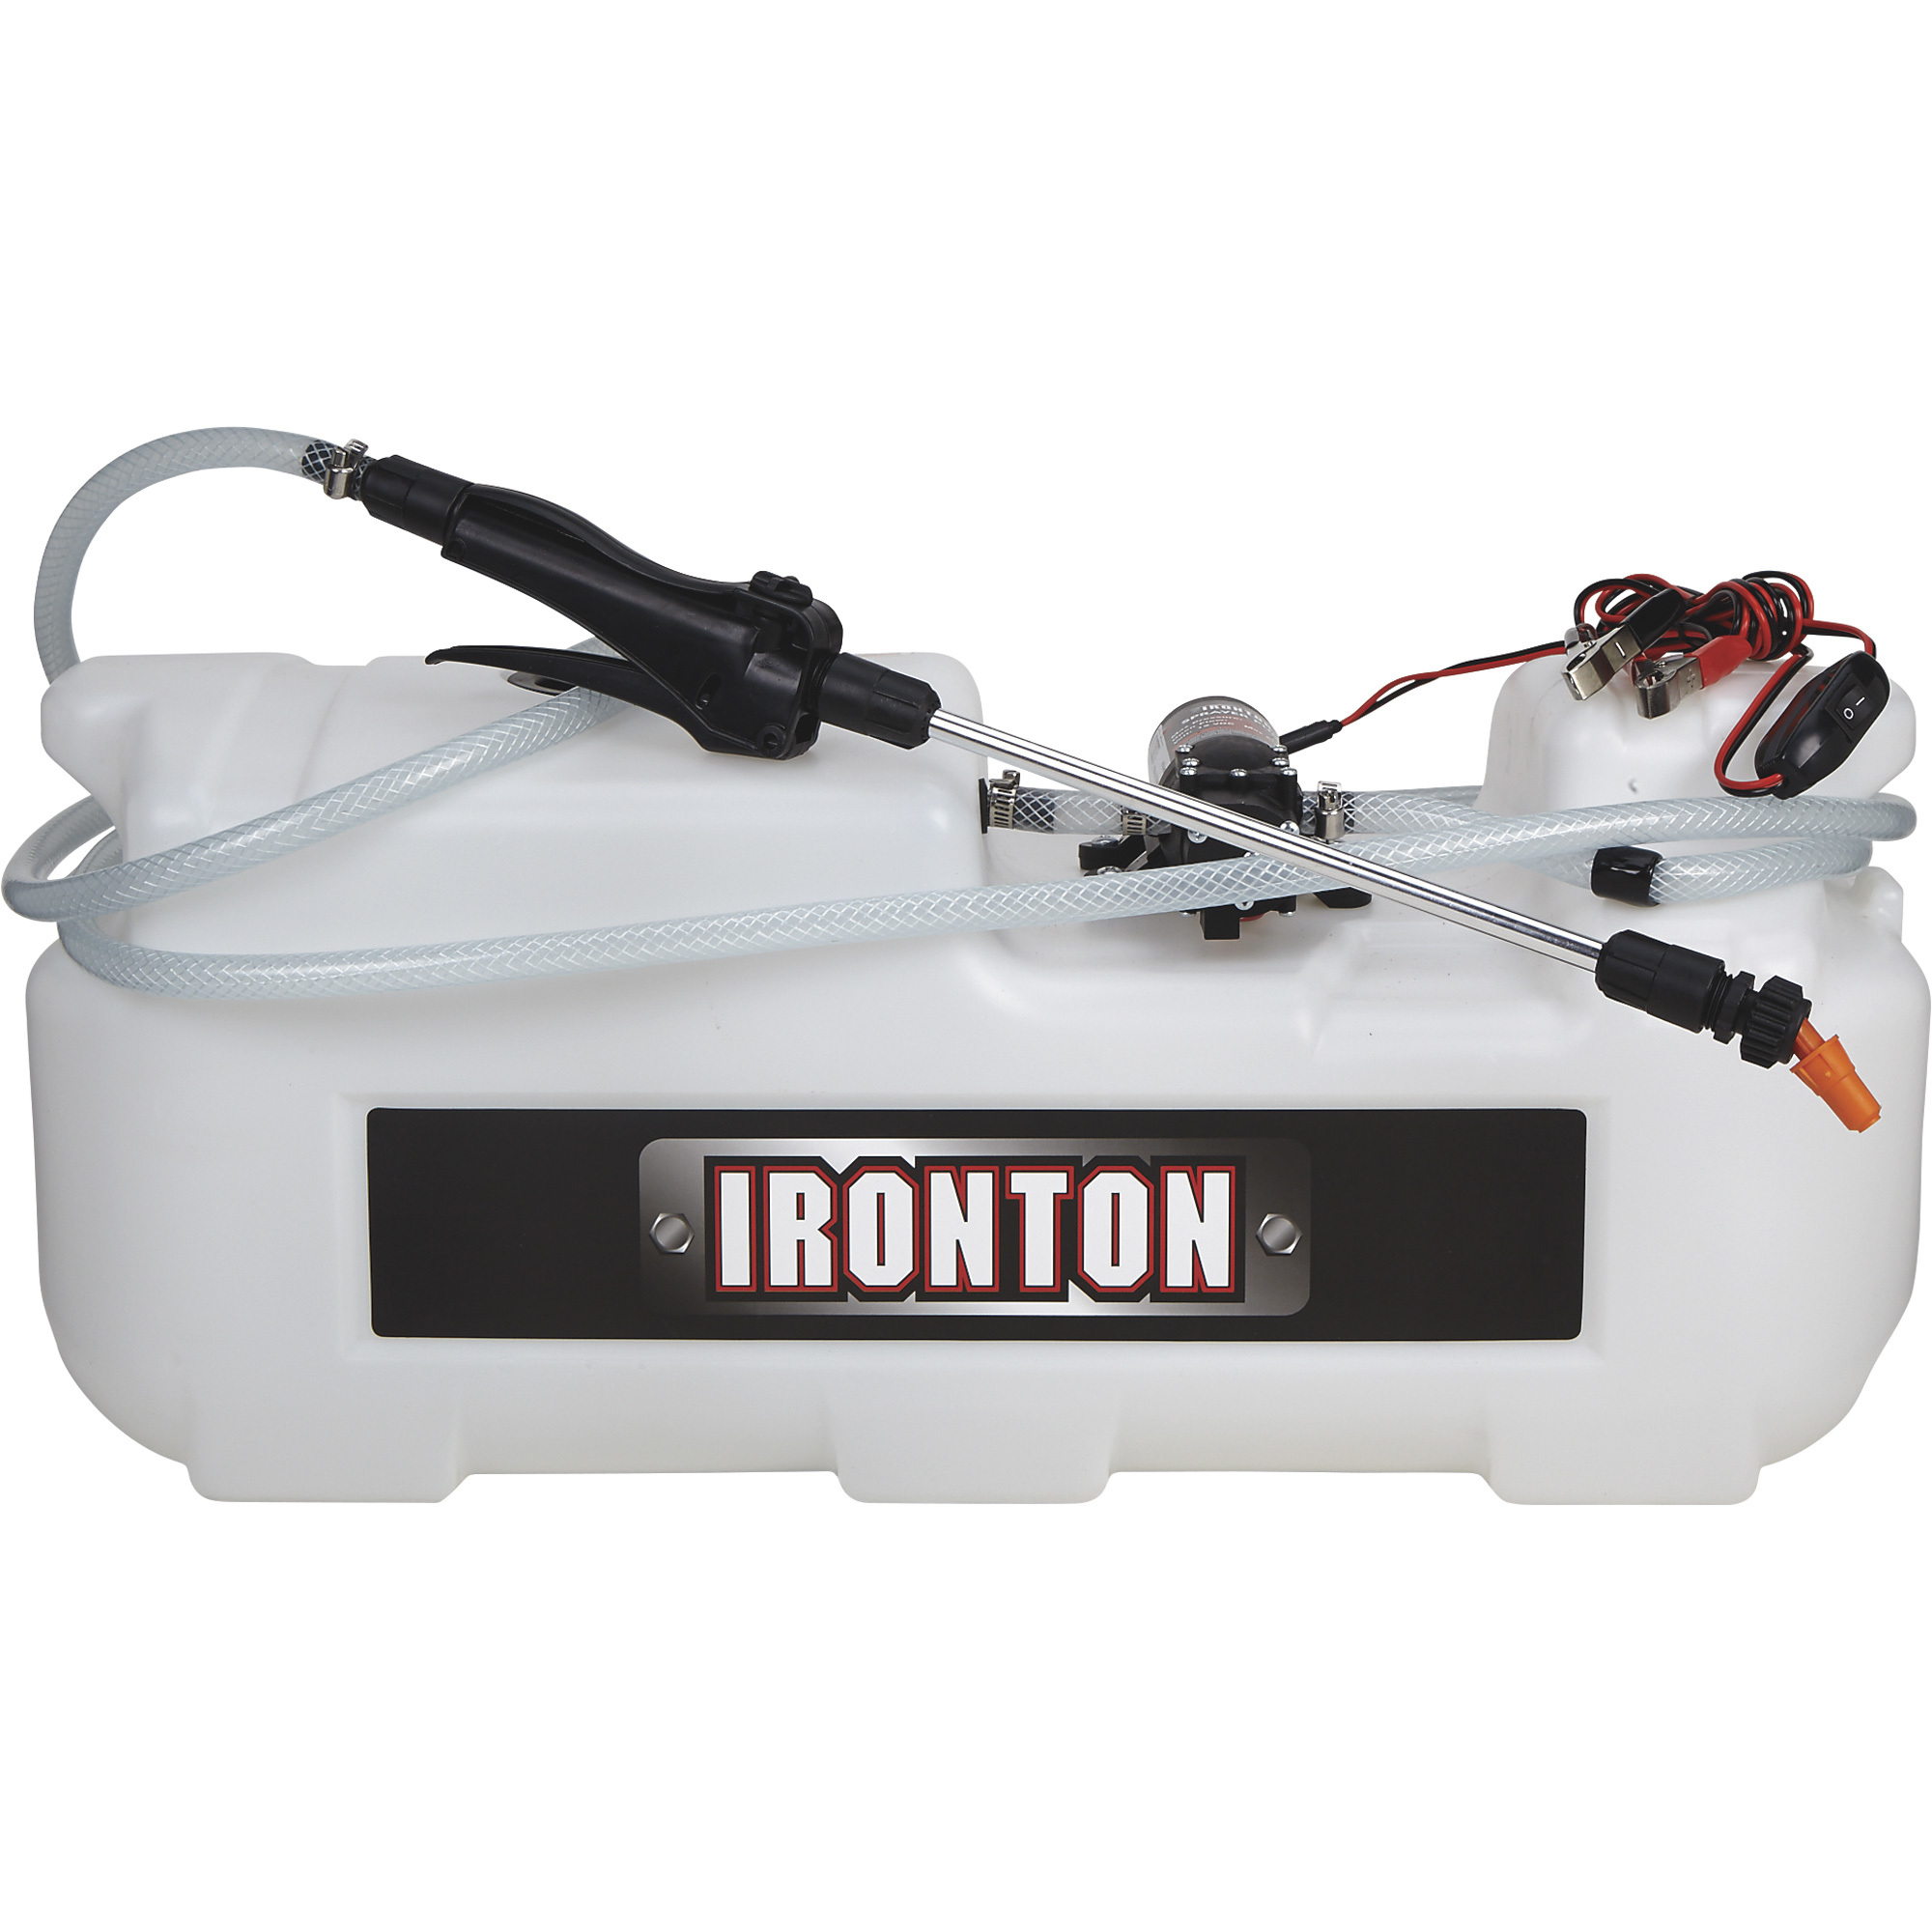 Ironton ATV Spot Sprayer â 8-Gallon Capacity, 1 GPM, 12 Volt